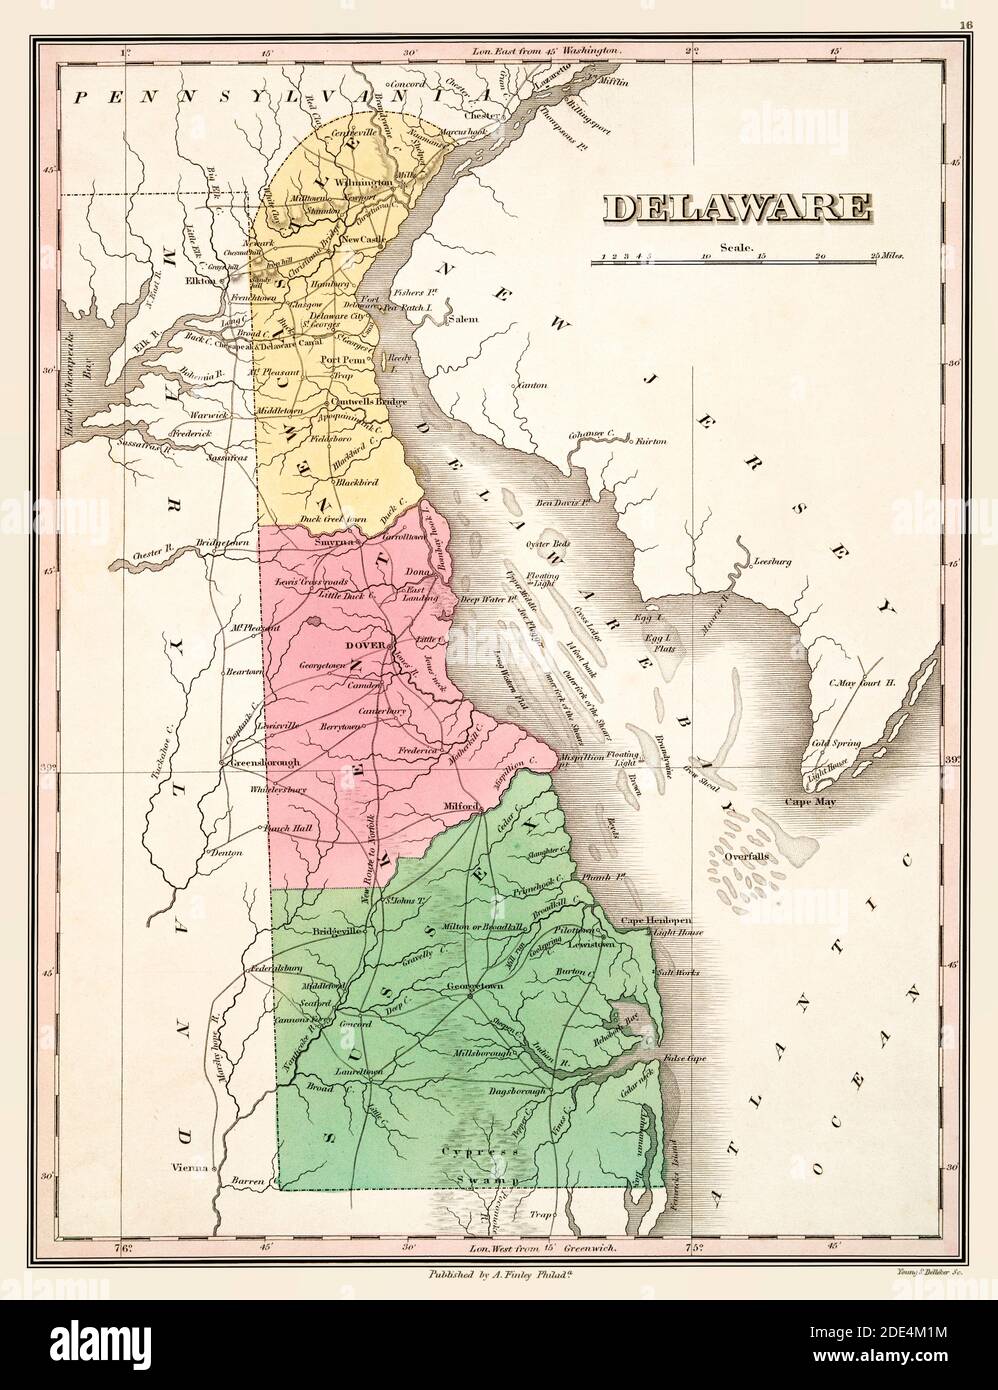 Delaware Karte Um 1824. Dies ist eine erweiterte, restaurierte Reproduktion einer alten Karte des Delaware um 1824. Es zeigt seine drei Grafschaften in Farbe. Zeigt Städte und geografische Merkmale an. Stockfoto